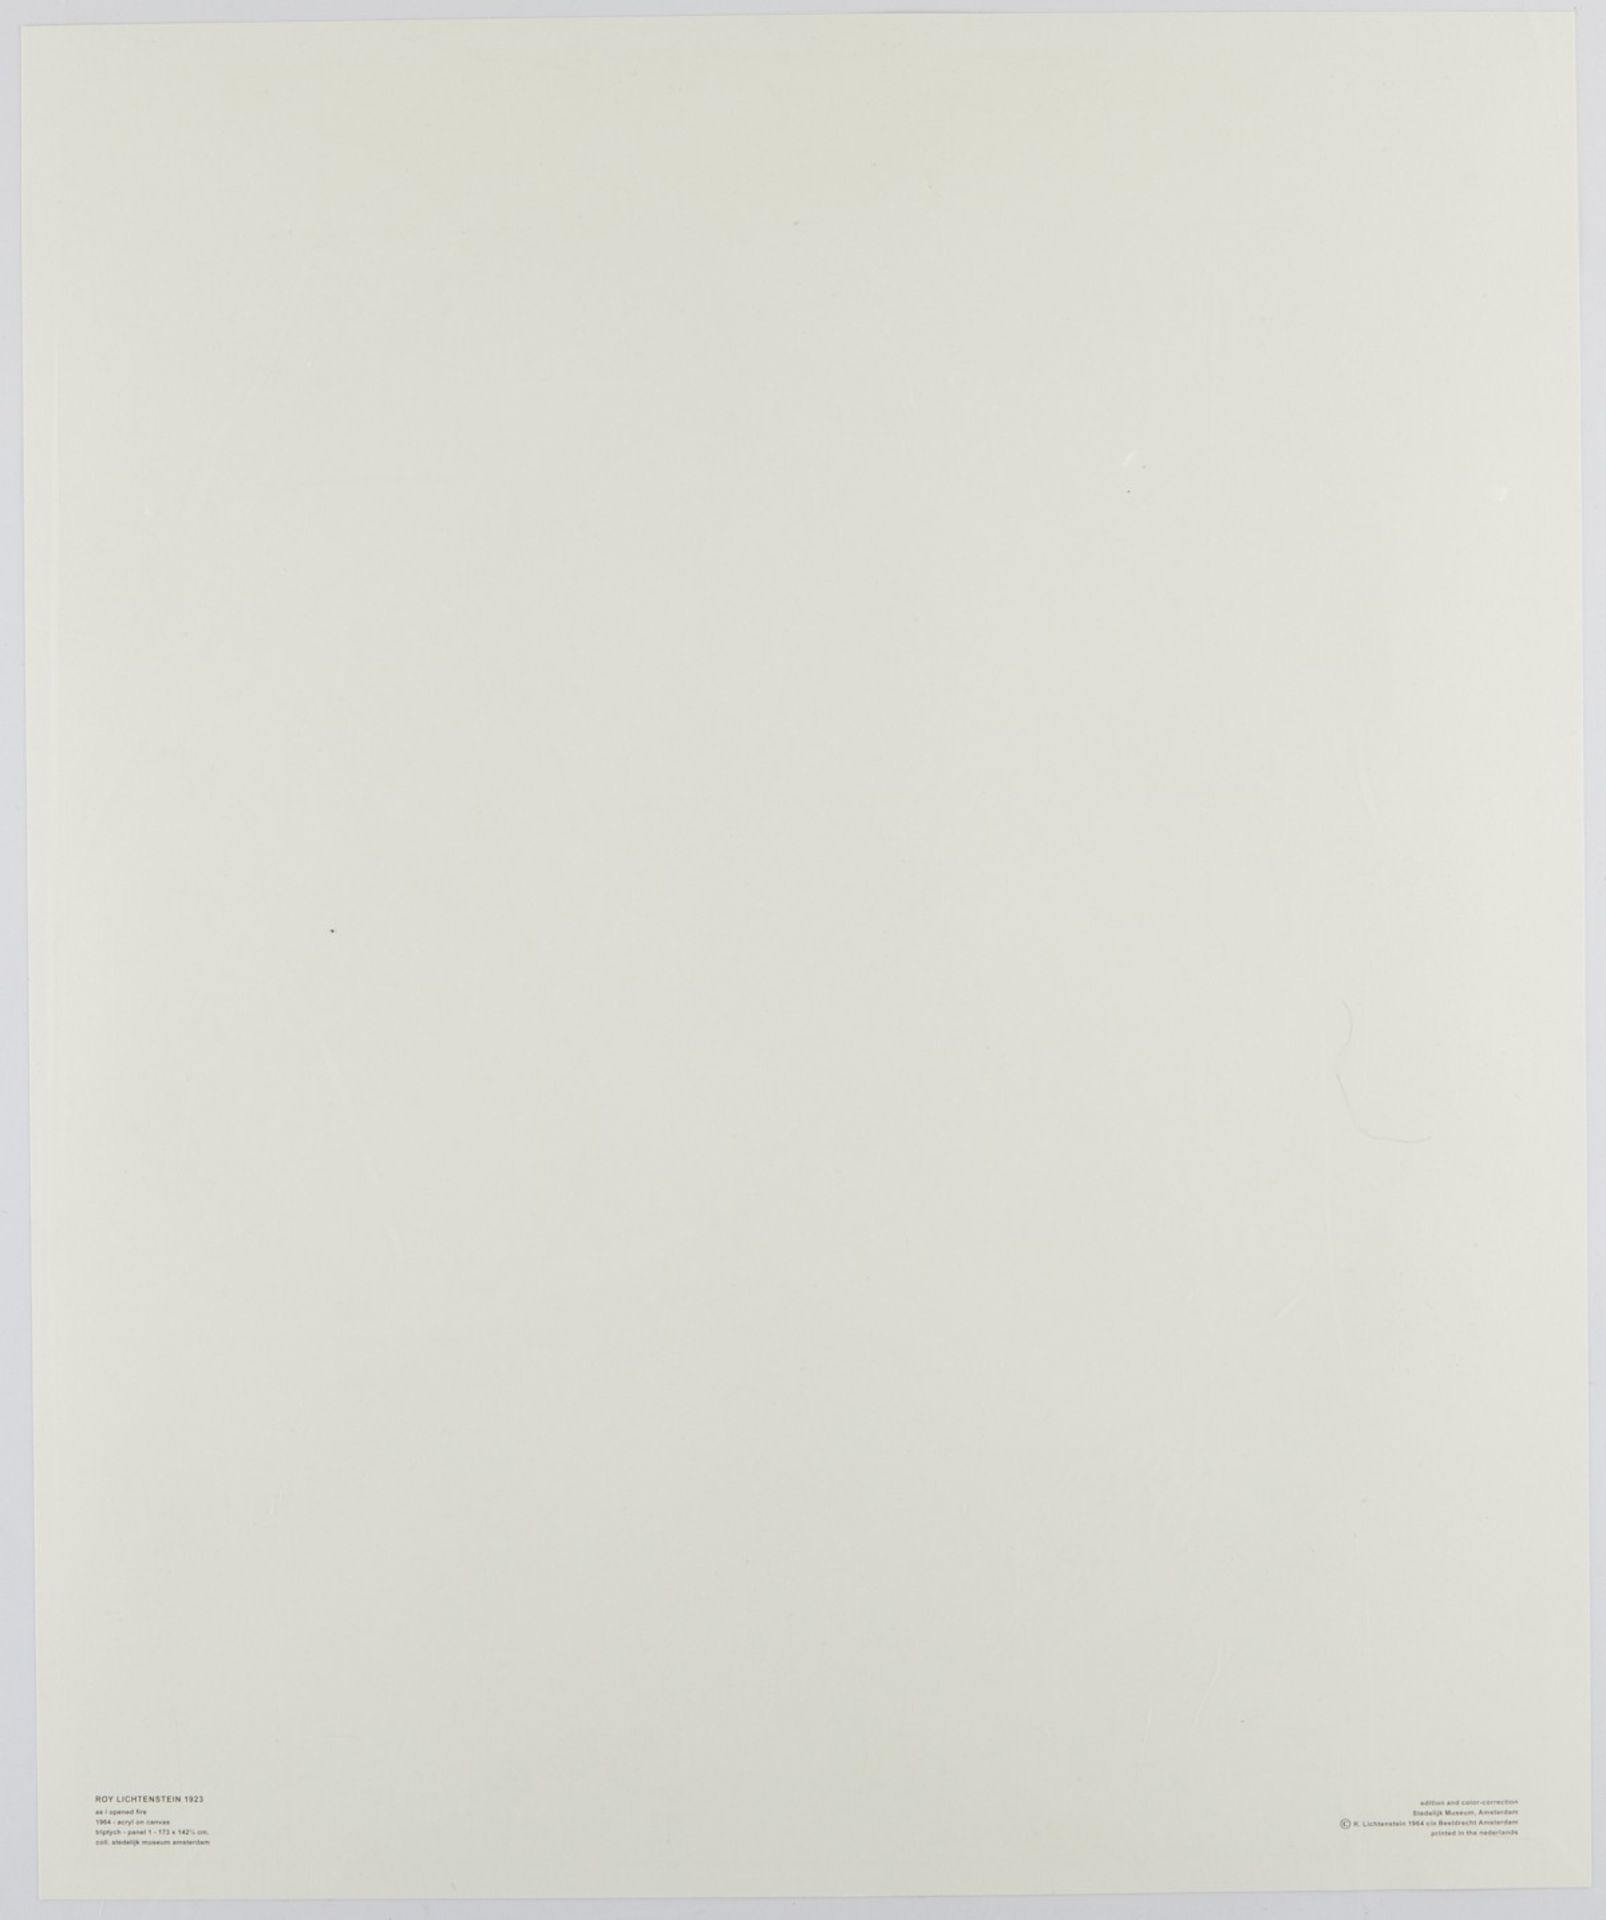 Roy Lichtenstein "As I Opened Fire" Poster Triptych - Bild 5 aus 15